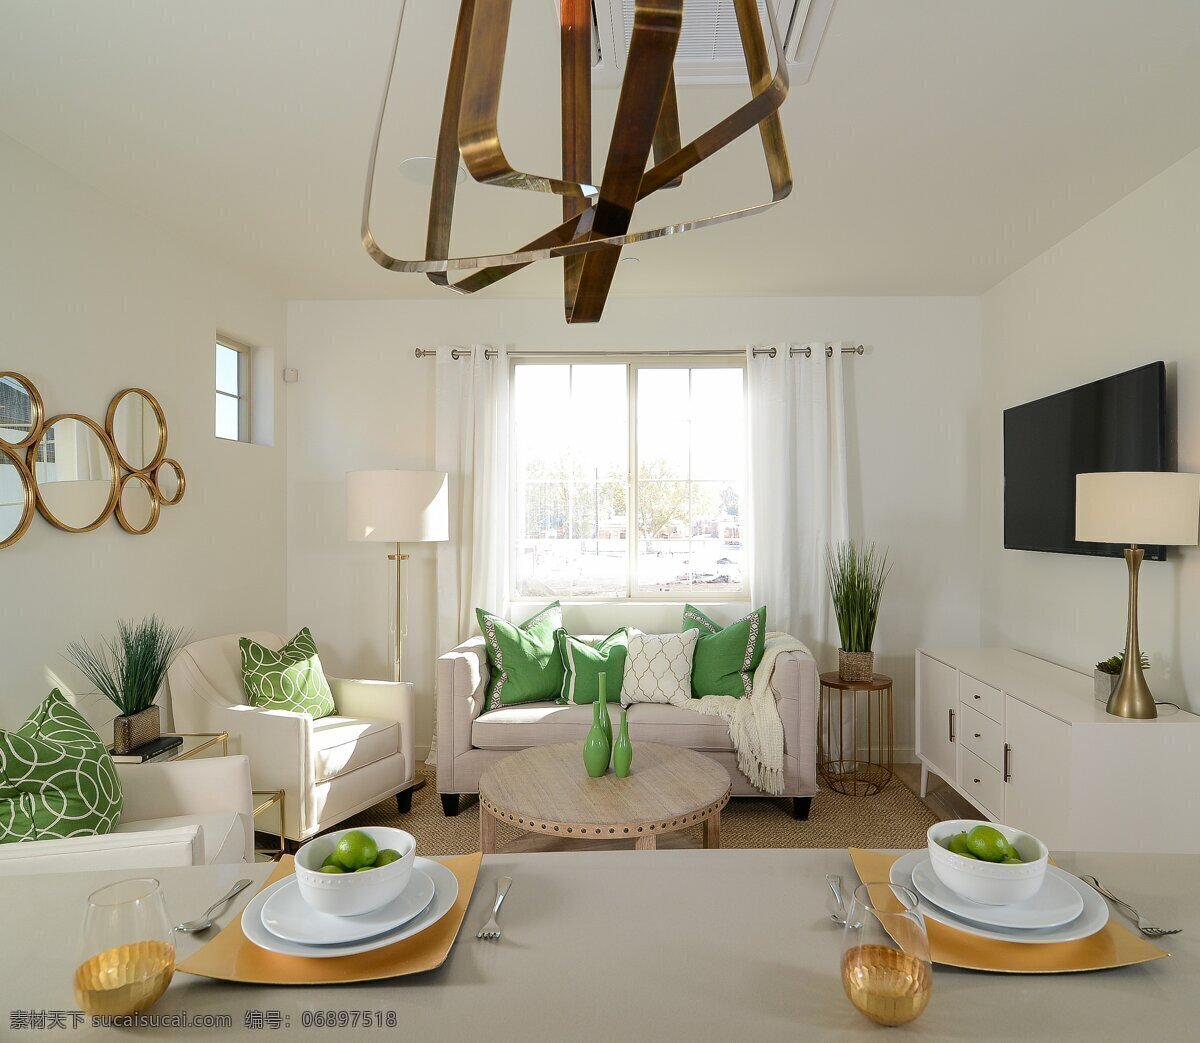 现代 文艺 时尚 客厅 米色 餐桌 室内装修 效果图 白色电视柜 白色沙发 客厅装修 浅色背景墙